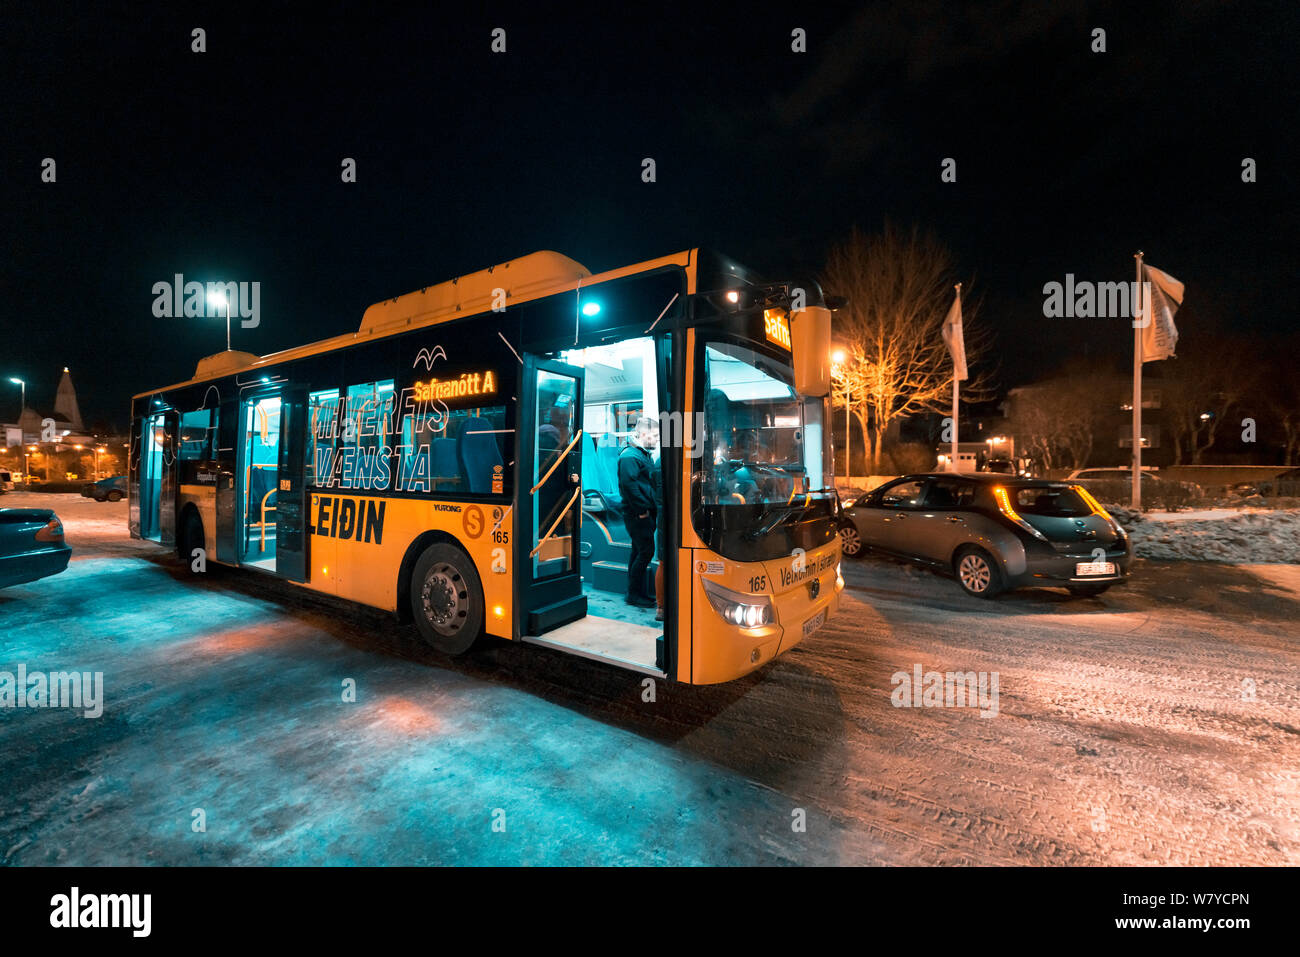 Public City Bus, Reykjavik, Iceland Stock Photo